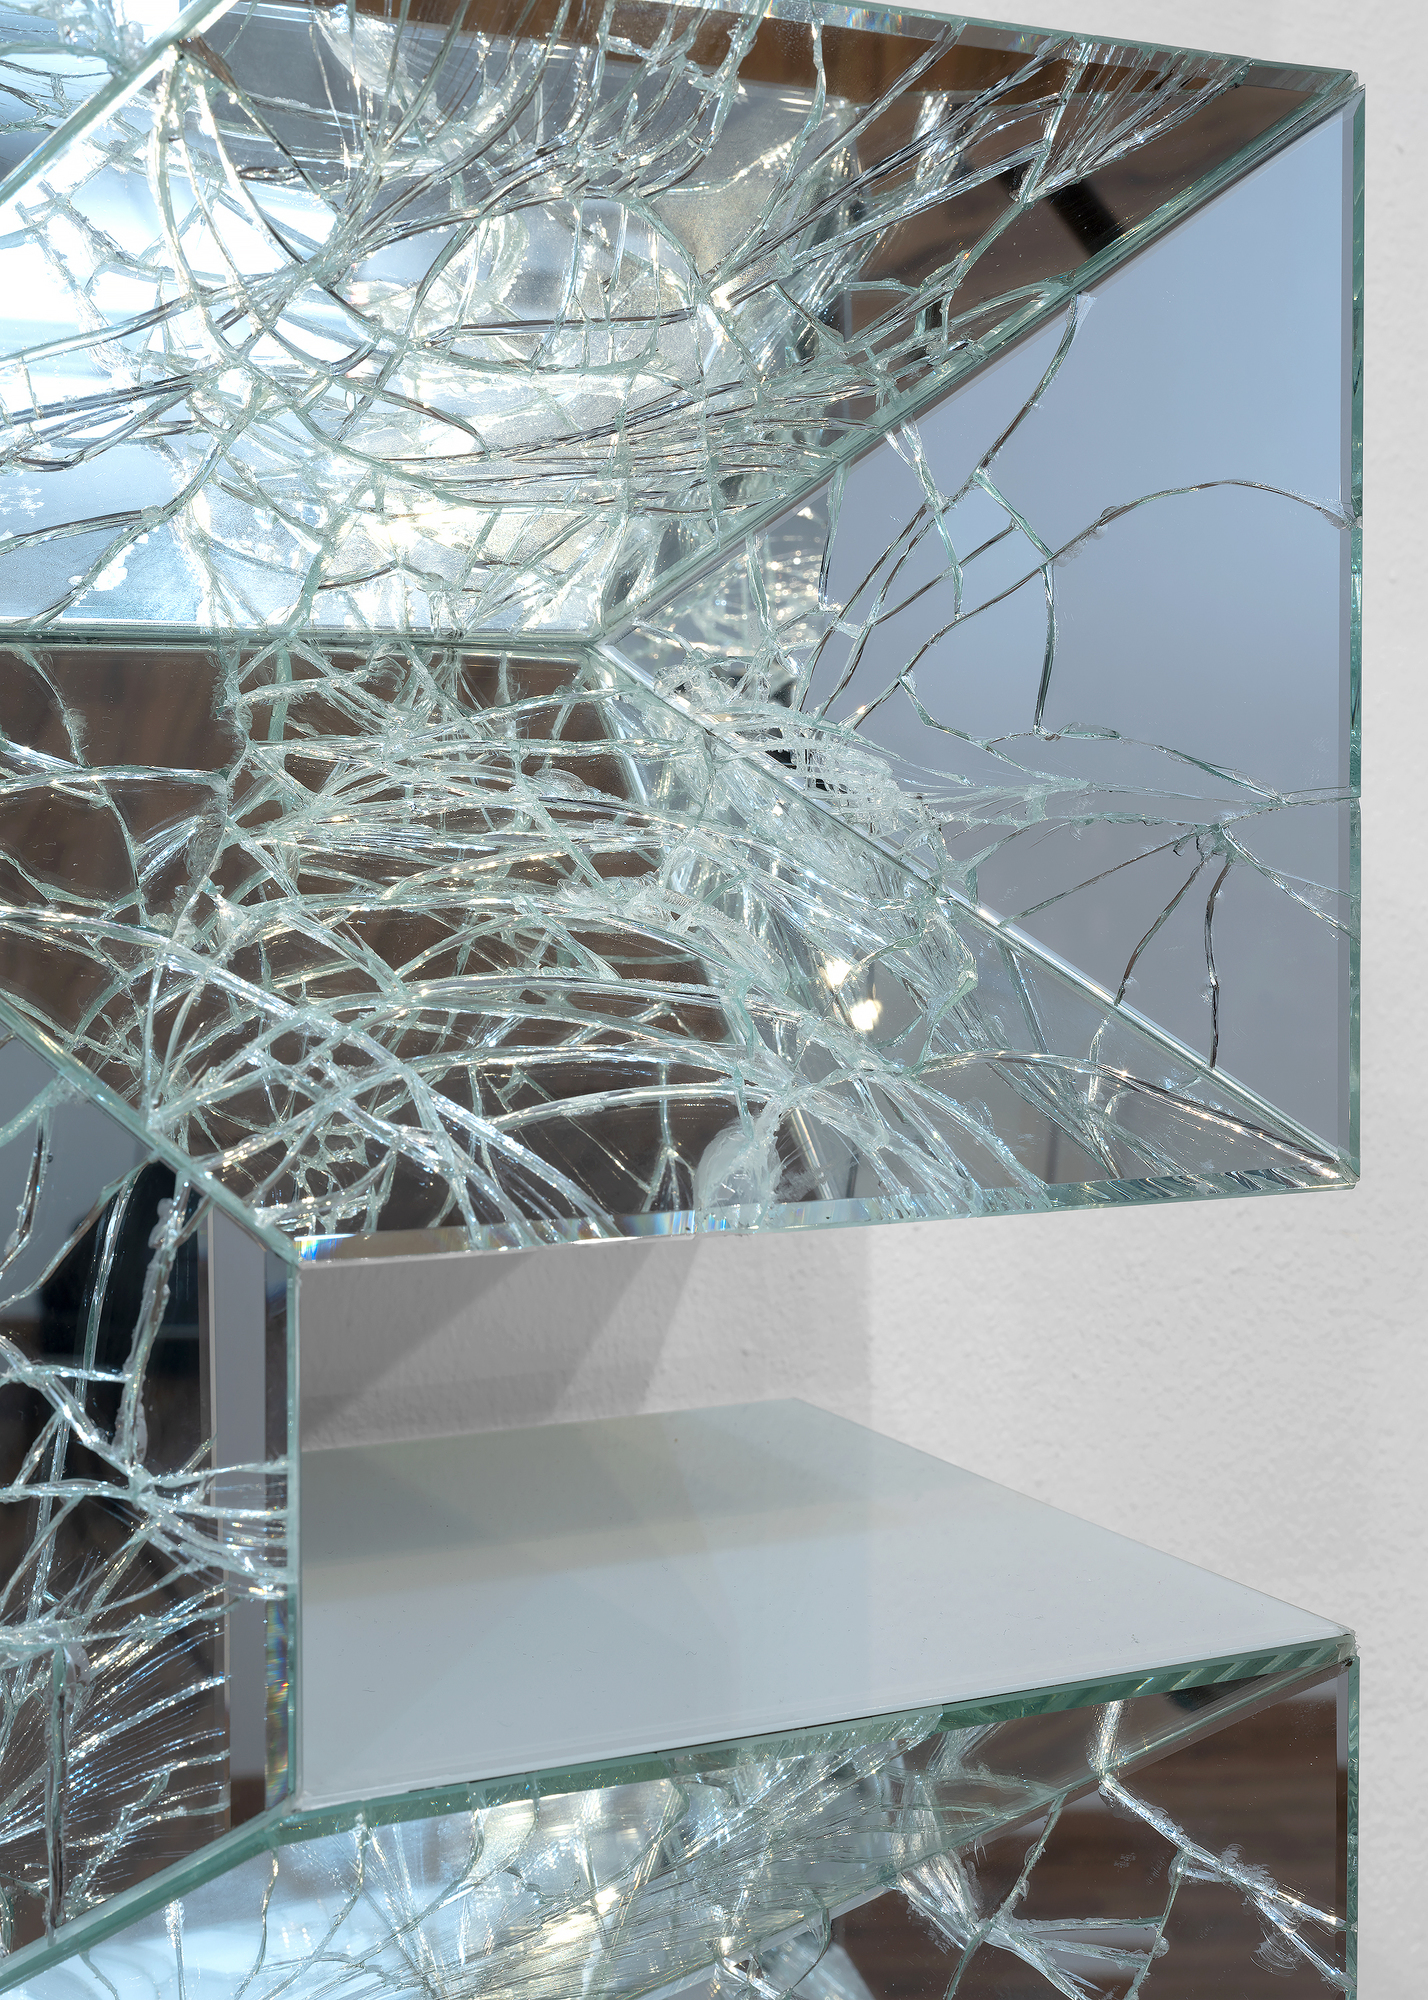 ダグ・エイトケンは、極端に拡大・断片化した画面を使った実験的なビデオアーティストとしてよく知られています。鏡は、彼の彫刻、インスタレーション、映画において中心的なモチーフとなっています。2011年に制作されたクロエ・セヴィニー主演の「ブラック・ミラー」は、コレクターのダキス・ジョアンヌの依頼で、ギリシャ沖に浮かぶはしけの上でデビューしました。2016年のカタリナ島沖の画期的な水中アートインスタレーションでは、表面が鏡面になっているパビリオンが、水中を流れる光を屈折させ、万華鏡のような視覚効果を生み出しました。2012年に制作されたこの彫刻「Movie」でも鏡が使用されており、同様の知覚の分断の感覚を呼び起こし、印象的なプリズム照明効果を作り出しています。この作品は、「Fate」「Free」「Now」「Riot」「Sex」「Star」など、パンチの効いた言葉を使ったテキスト彫刻のシリーズから生まれました。